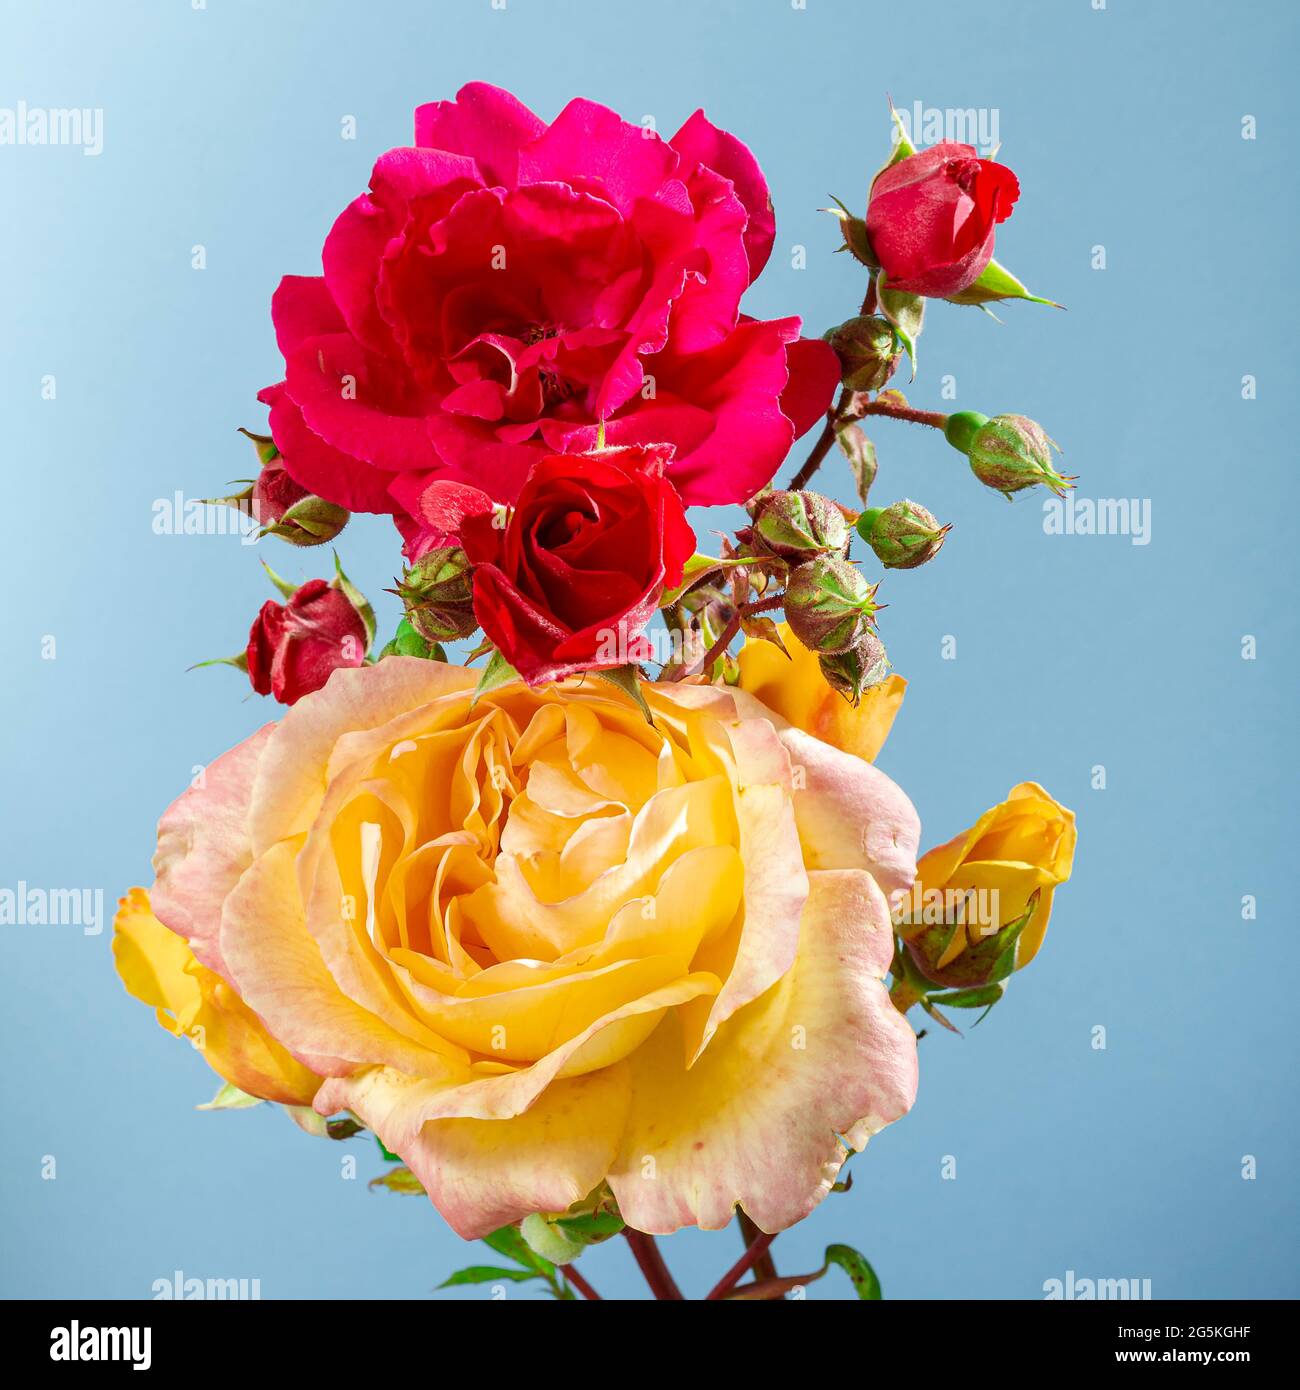 Primo piano di un bouquet di fiori di rosa naturale rosso e giallo su uno sfondo blu chiaro. La fotografia è stata scattata in uno studio con luce artificiale e. Foto Stock